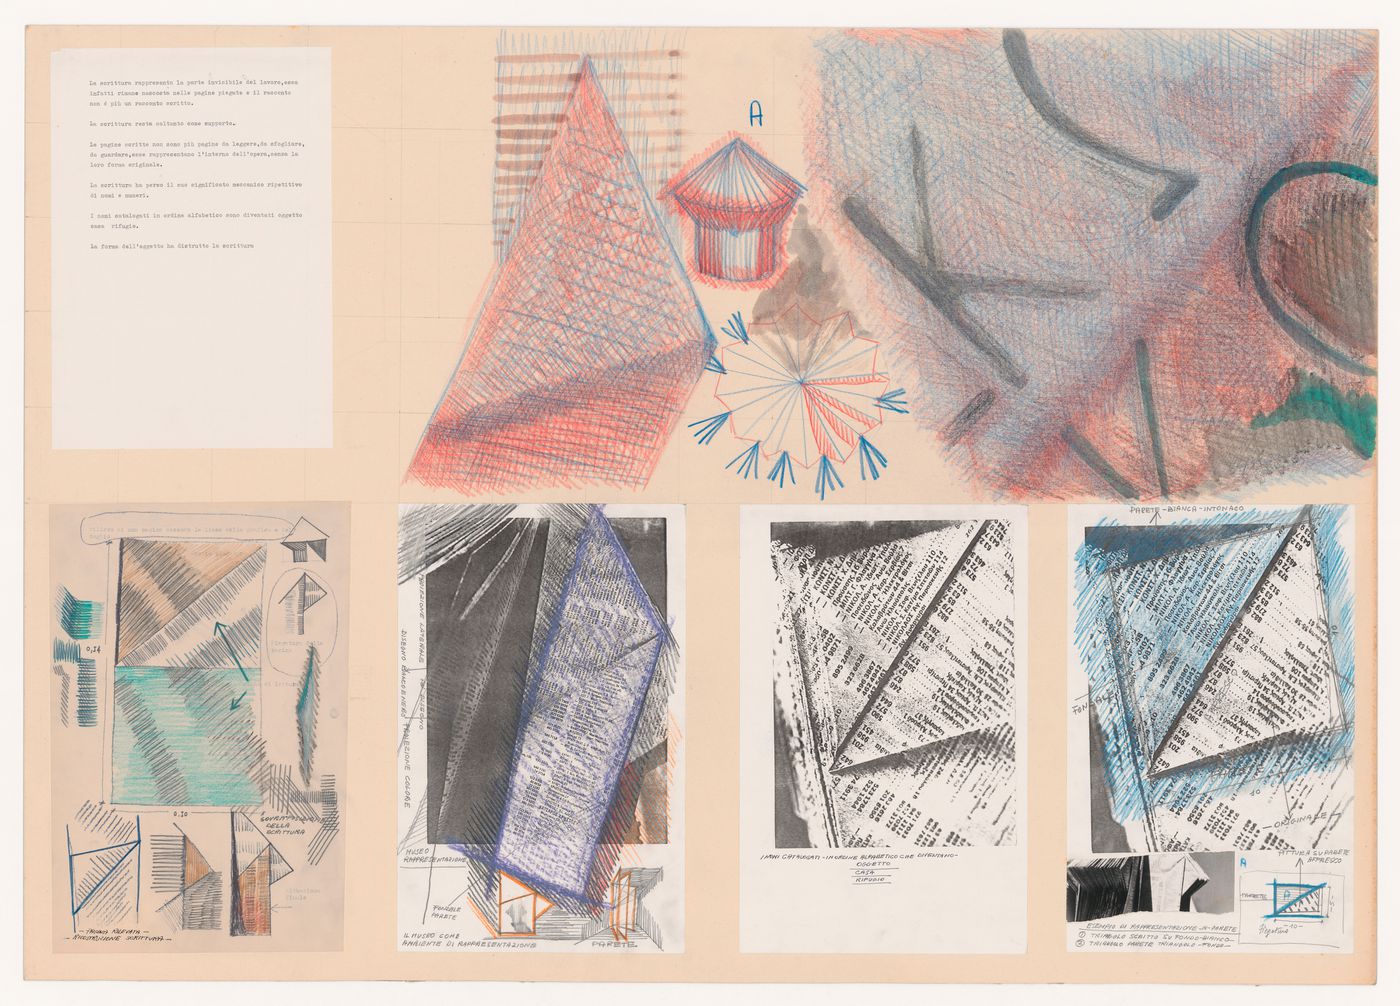 Presentation drawings for Architecttura di carta [Paper architecture]